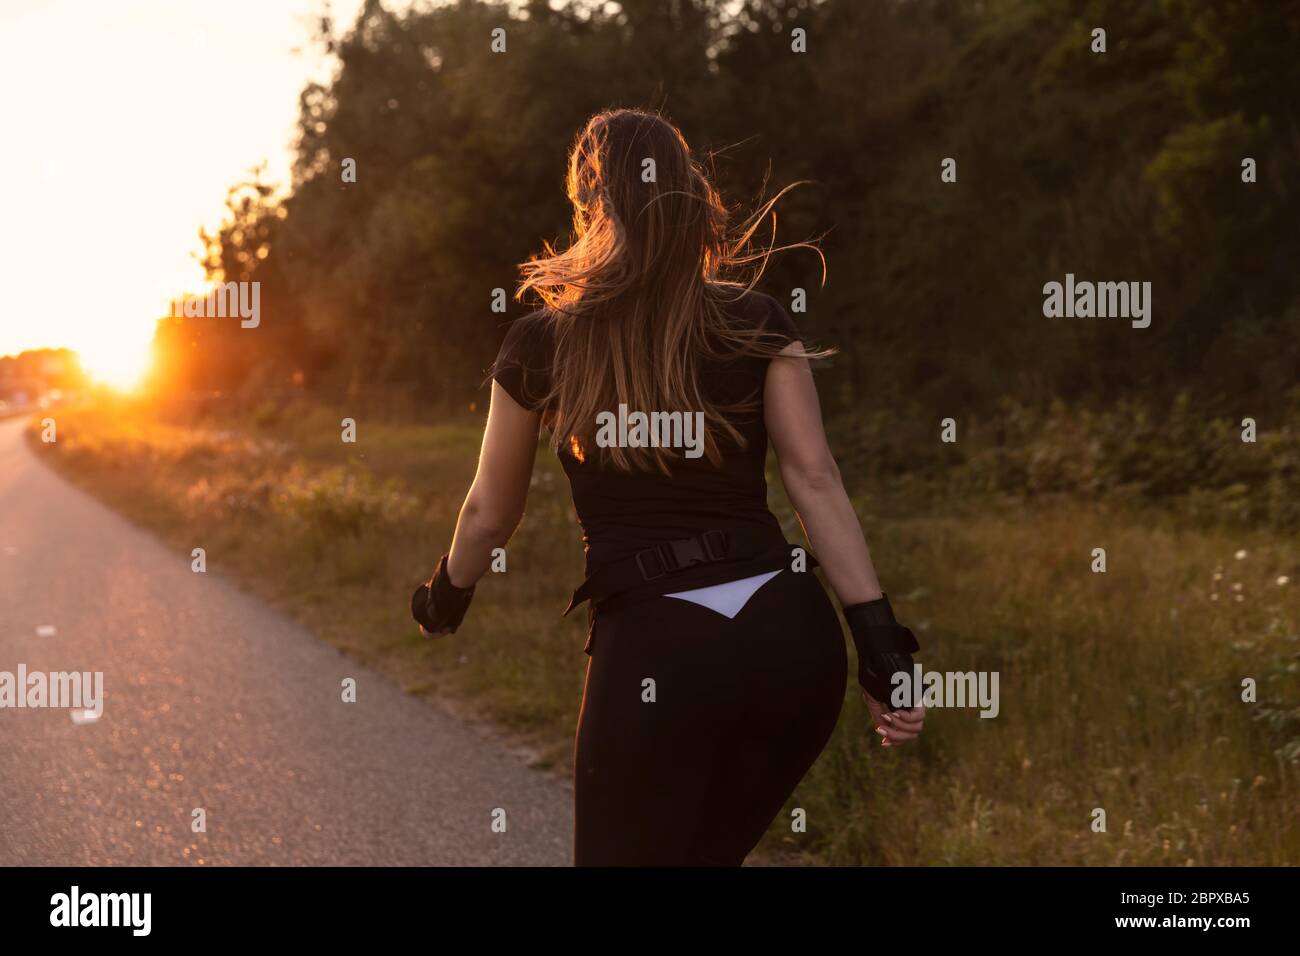 Eine junge Frau Roller Blading auf einer Straße mit Grün im Hintergrund. Sportlich sein, gesund leben. Aufnahme bei Sonnenuntergang, goldene Stunde Stockfoto